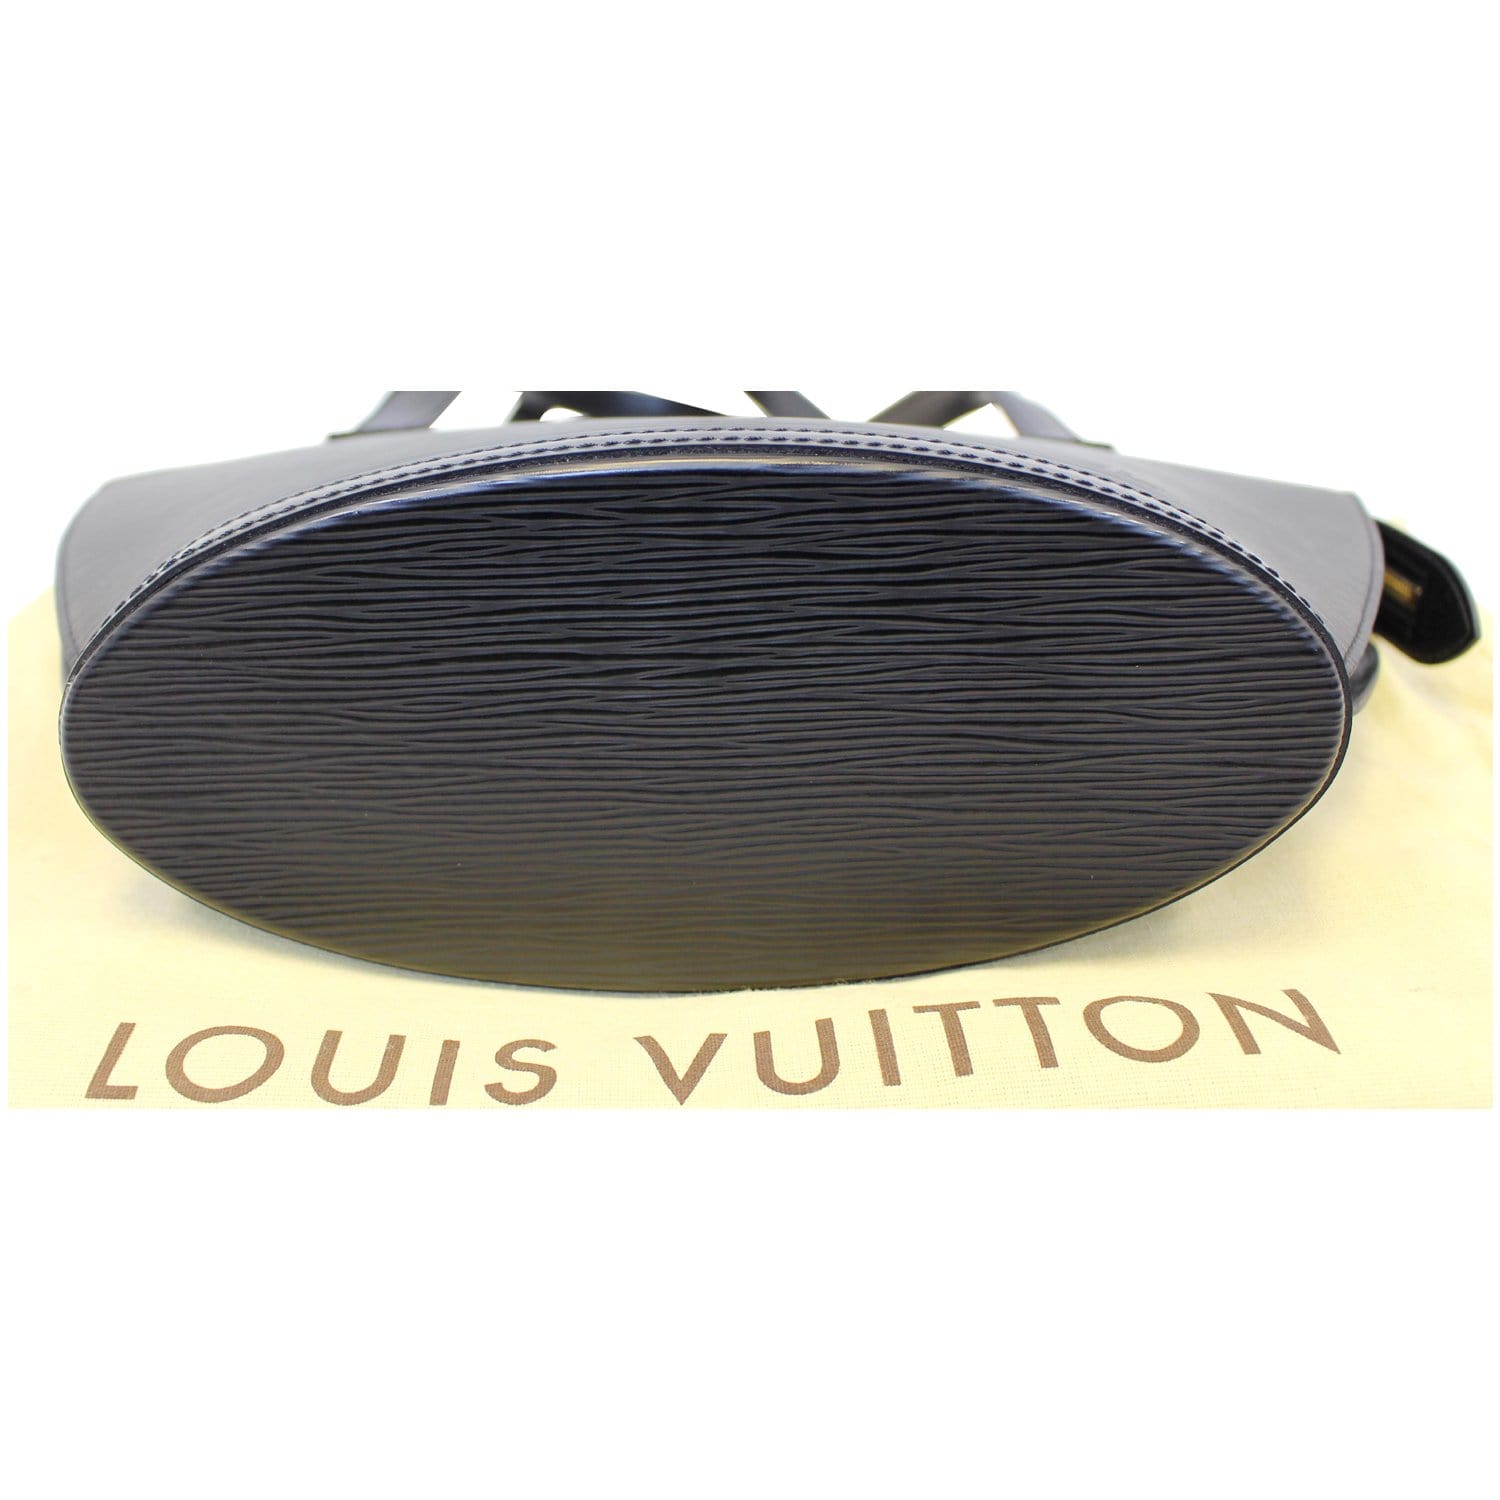 Saint jacques leather handbag Louis Vuitton Black in Leather - 34531125